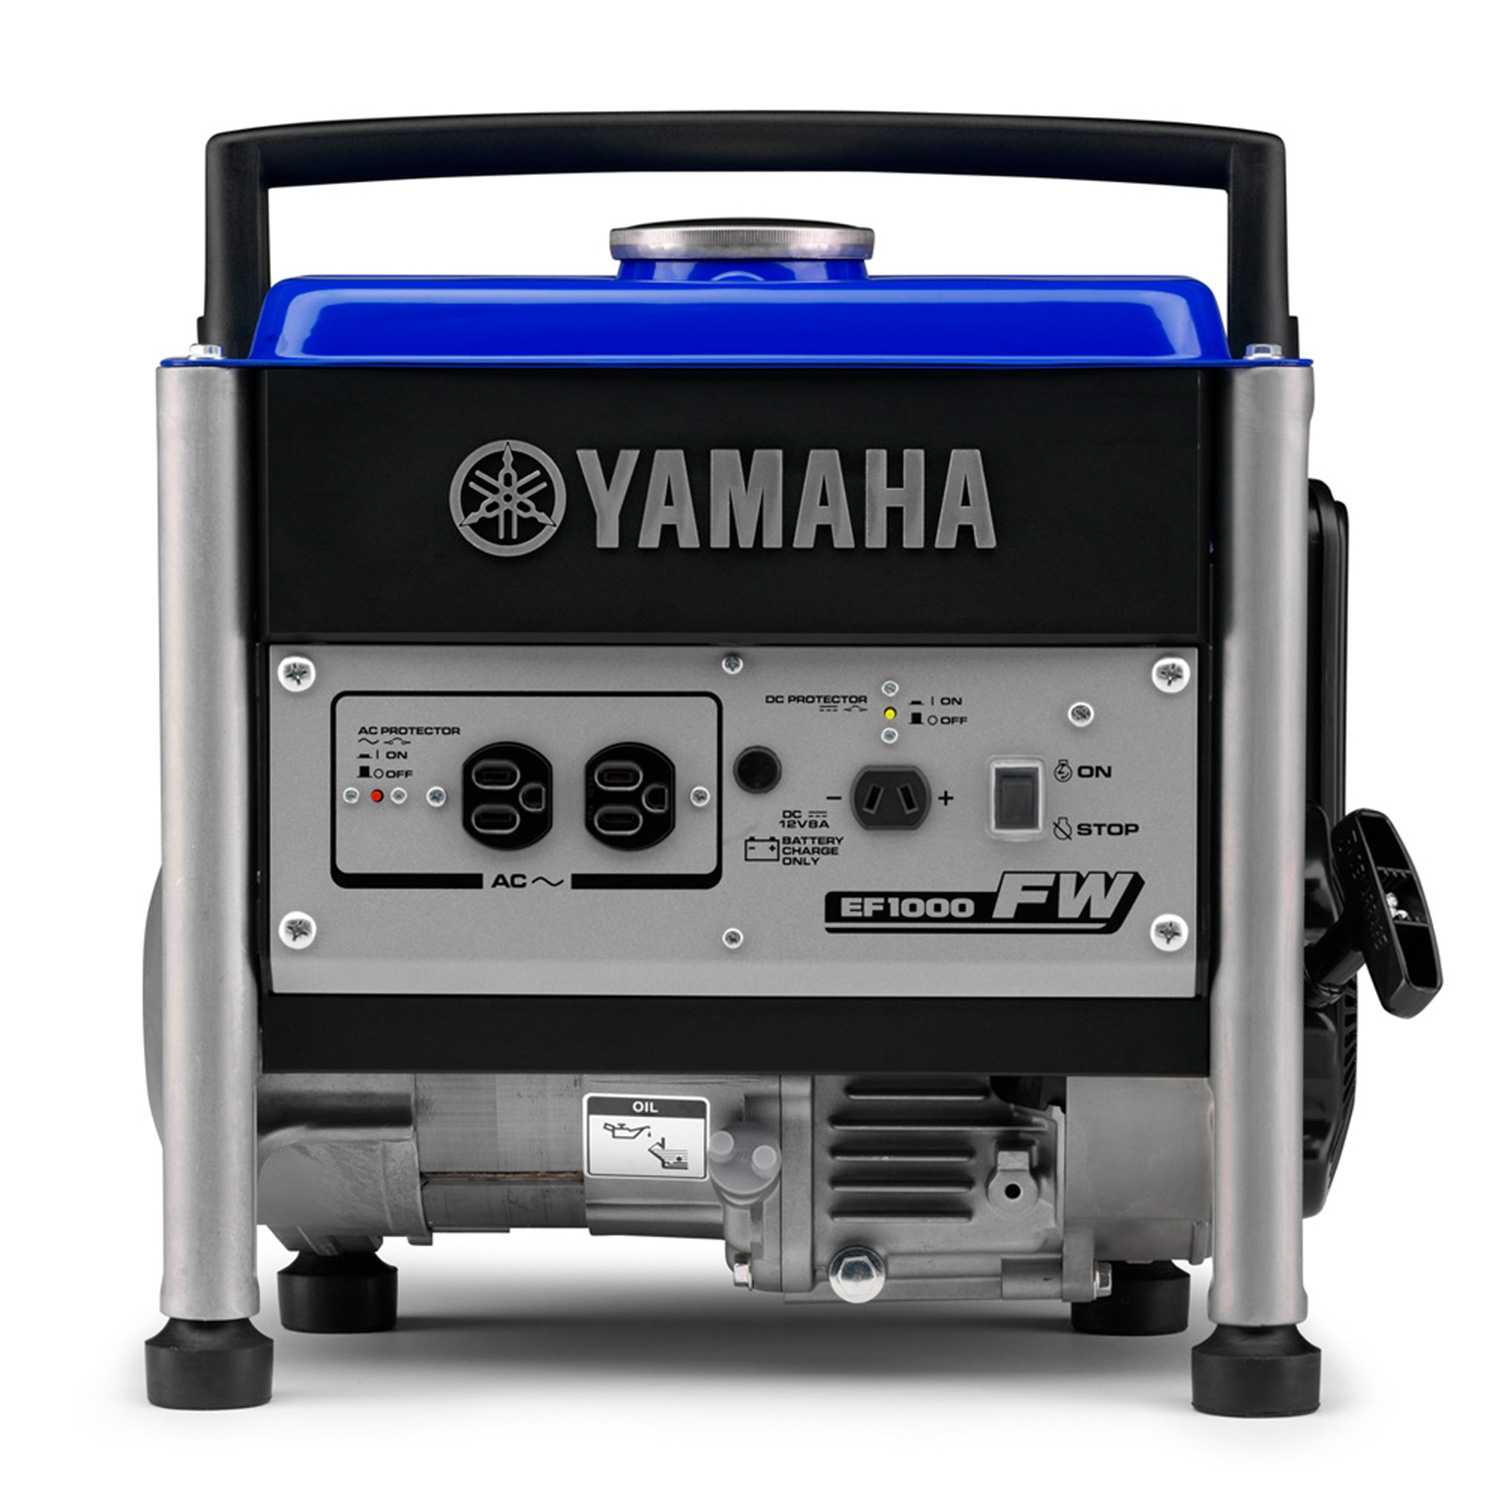 Купить генератор ямаха. Генератор Yamaha ef1000. Генератор Ямаха 1 КВТ ef1000. Генератор бензиновый Ямаха 2 КВТ. Бензиновый Генератор Yamaha ef1000.